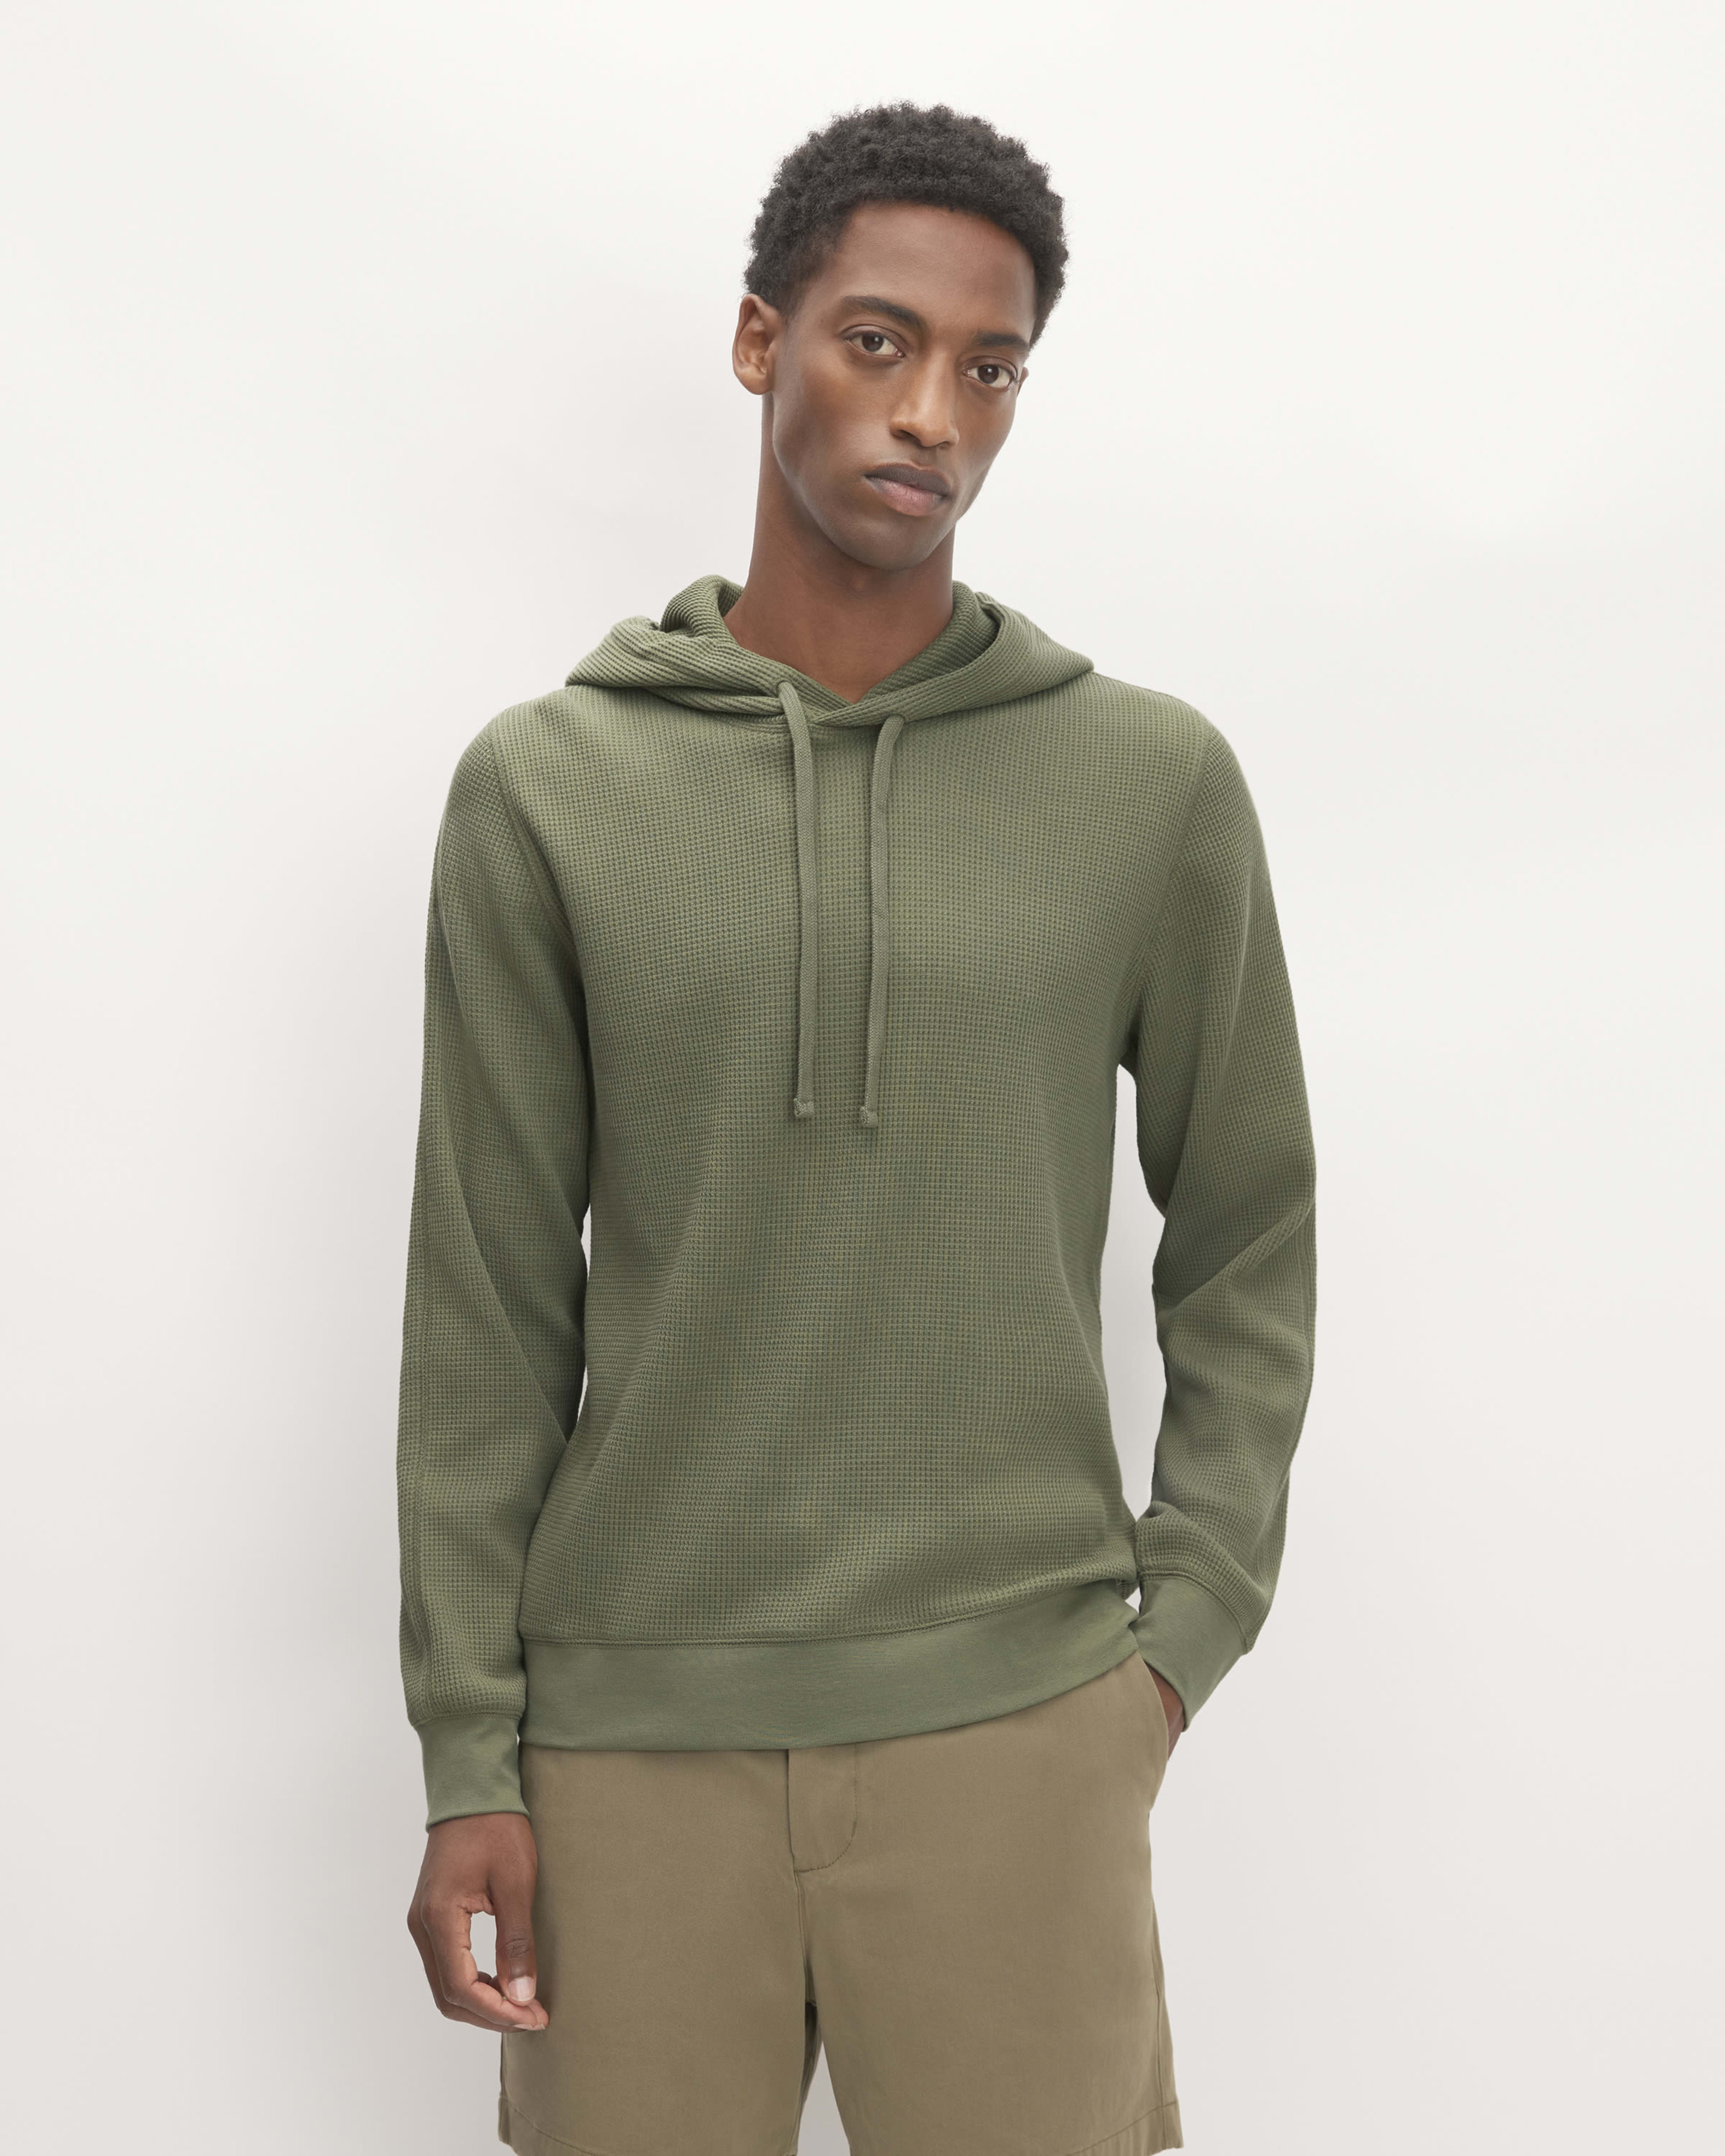 Men's Hoodies & Fleece, Sweatershirts, Pullovers